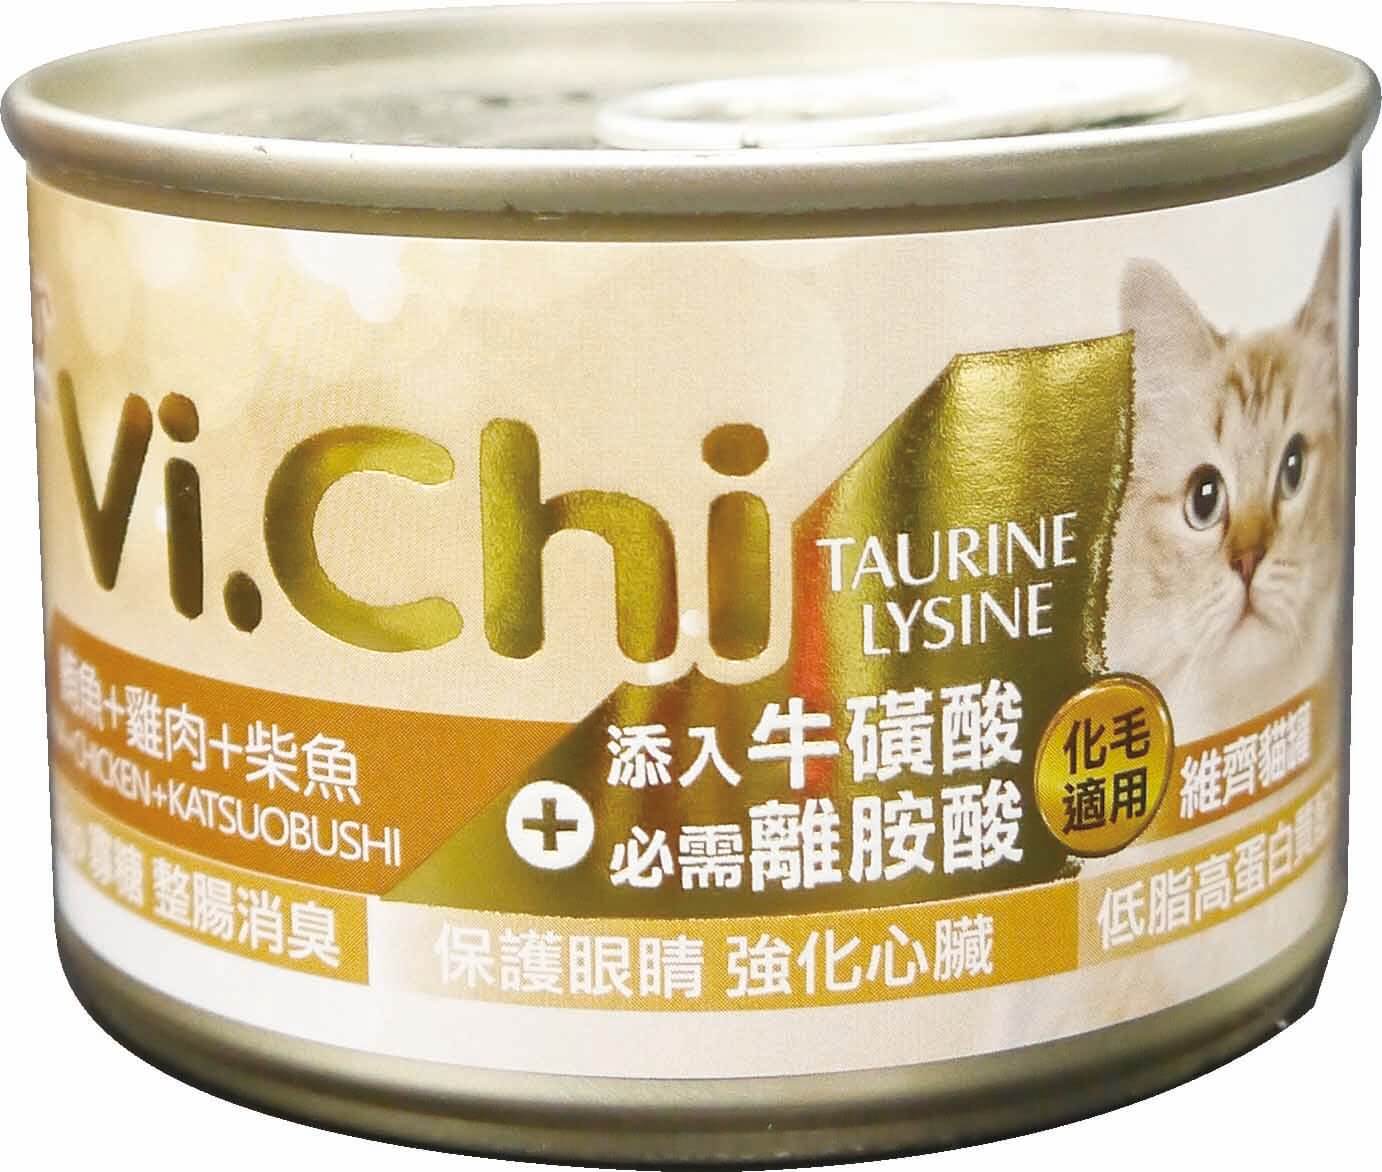 維齊貓罐160G-鮪魚+雞肉+柴魚
Vi.Chi cat can-tuna+chicken+katsuobusi